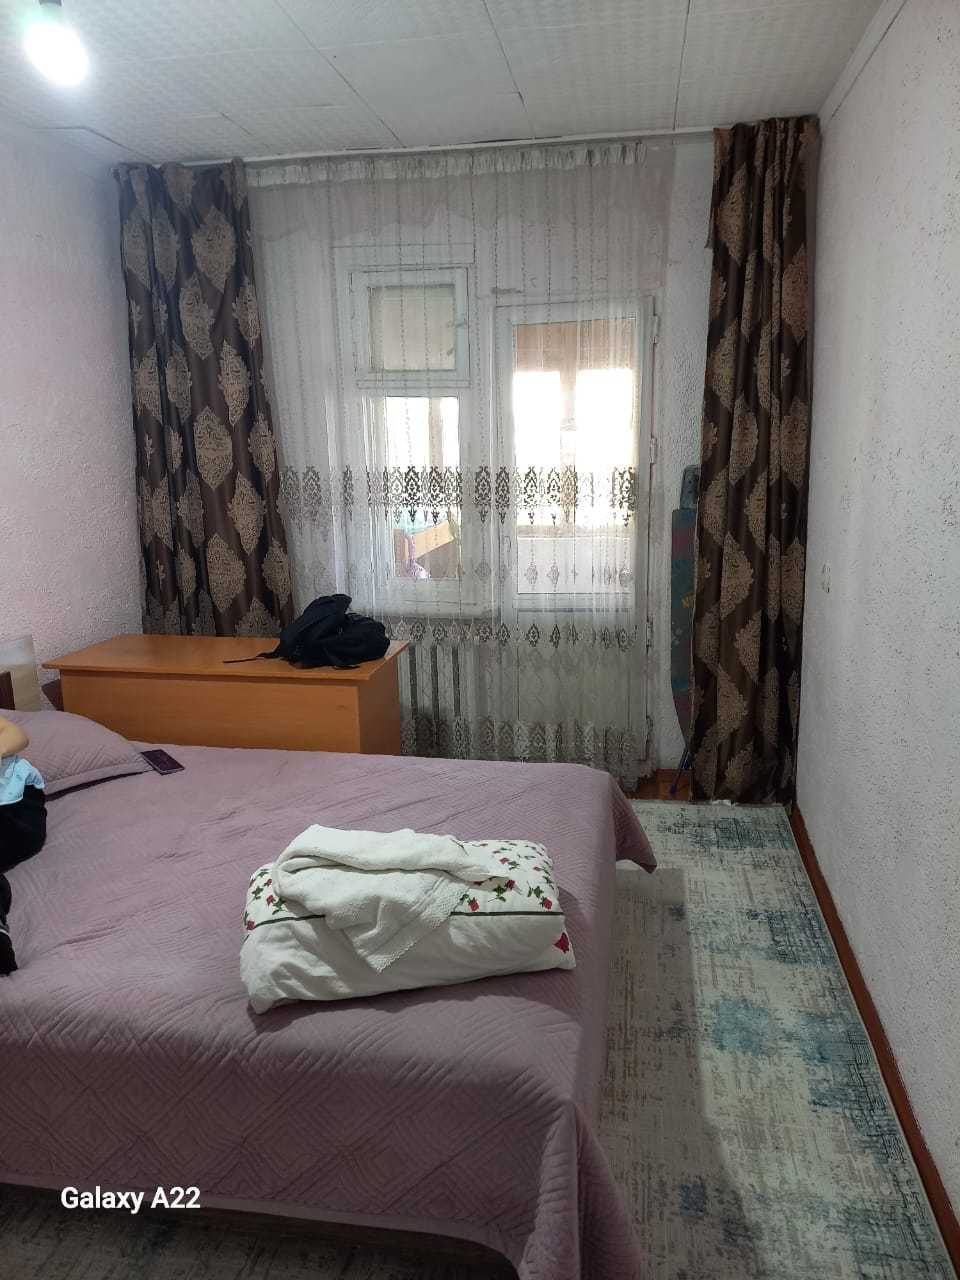 продается 2-х комнатная квартира в Карабулаке